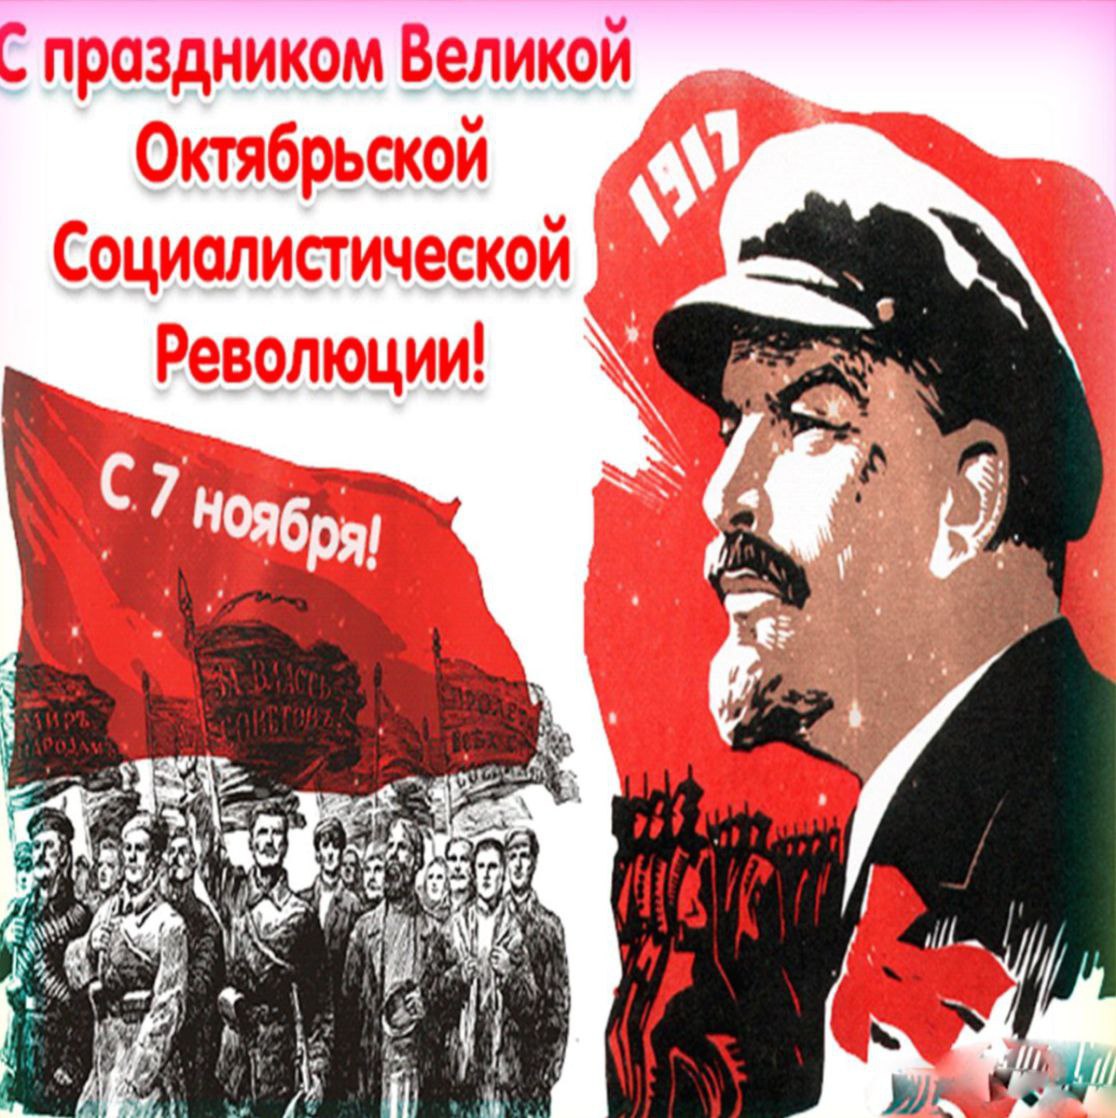 7 ноября годовщина Великой Октябрьской Социалистической Революции